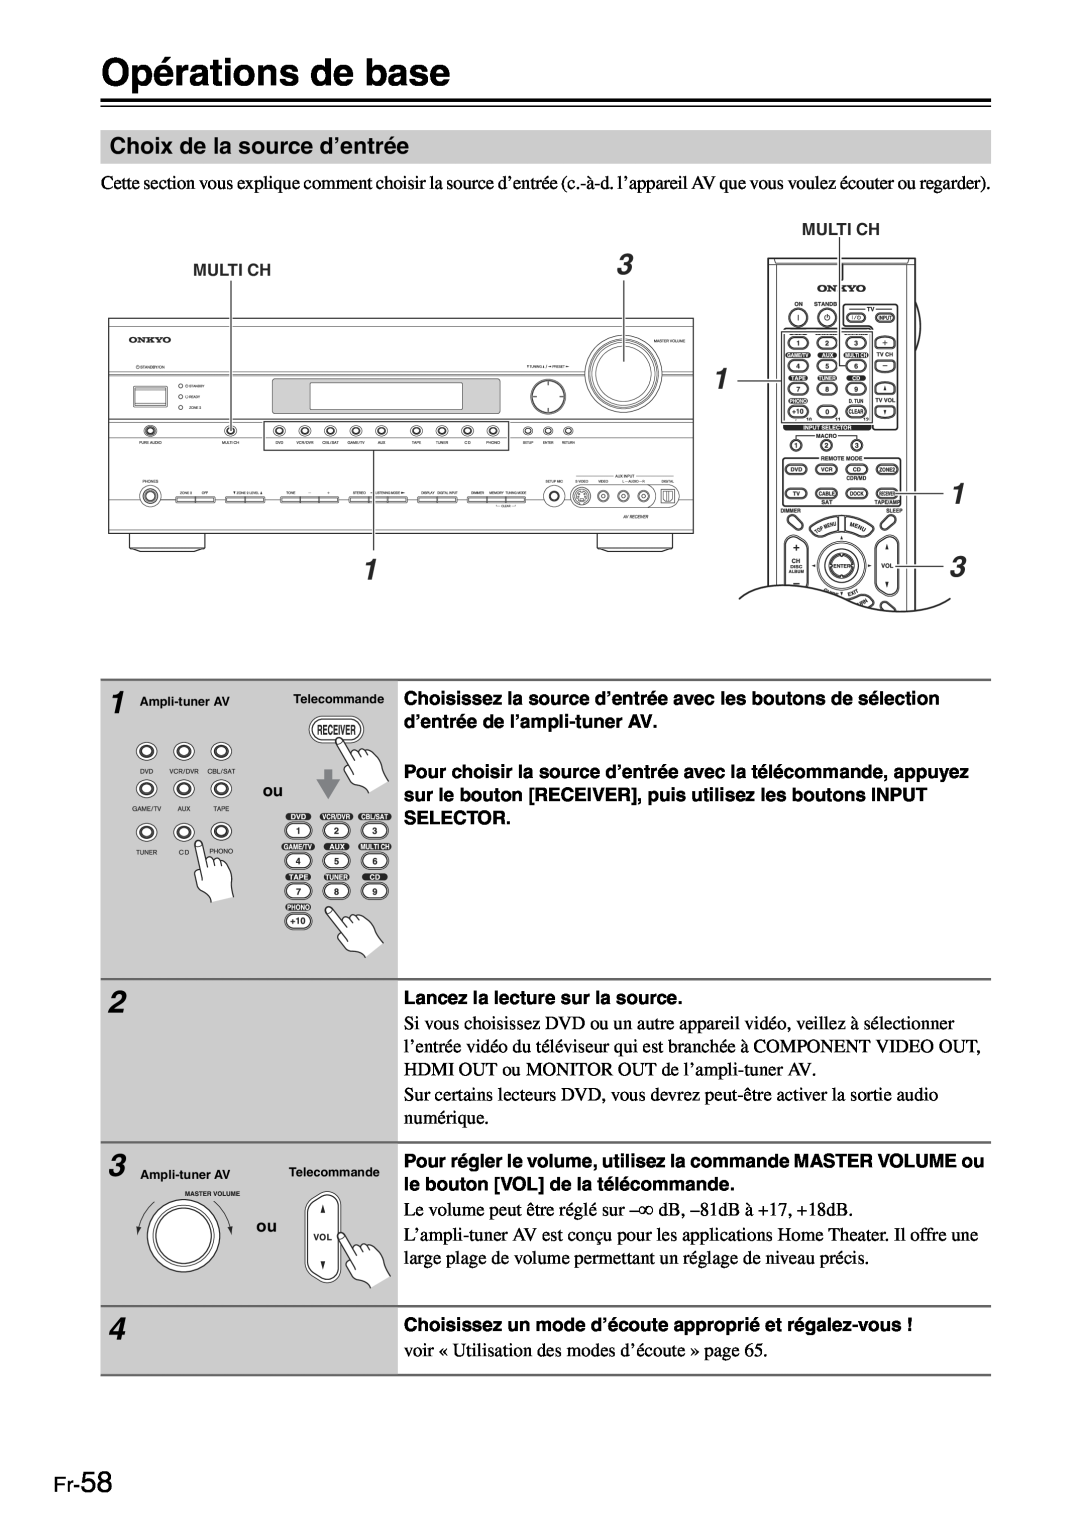 Onkyo TX-SR705 manual Opérations de base, Choix de la source d’entrée, Fr-58 